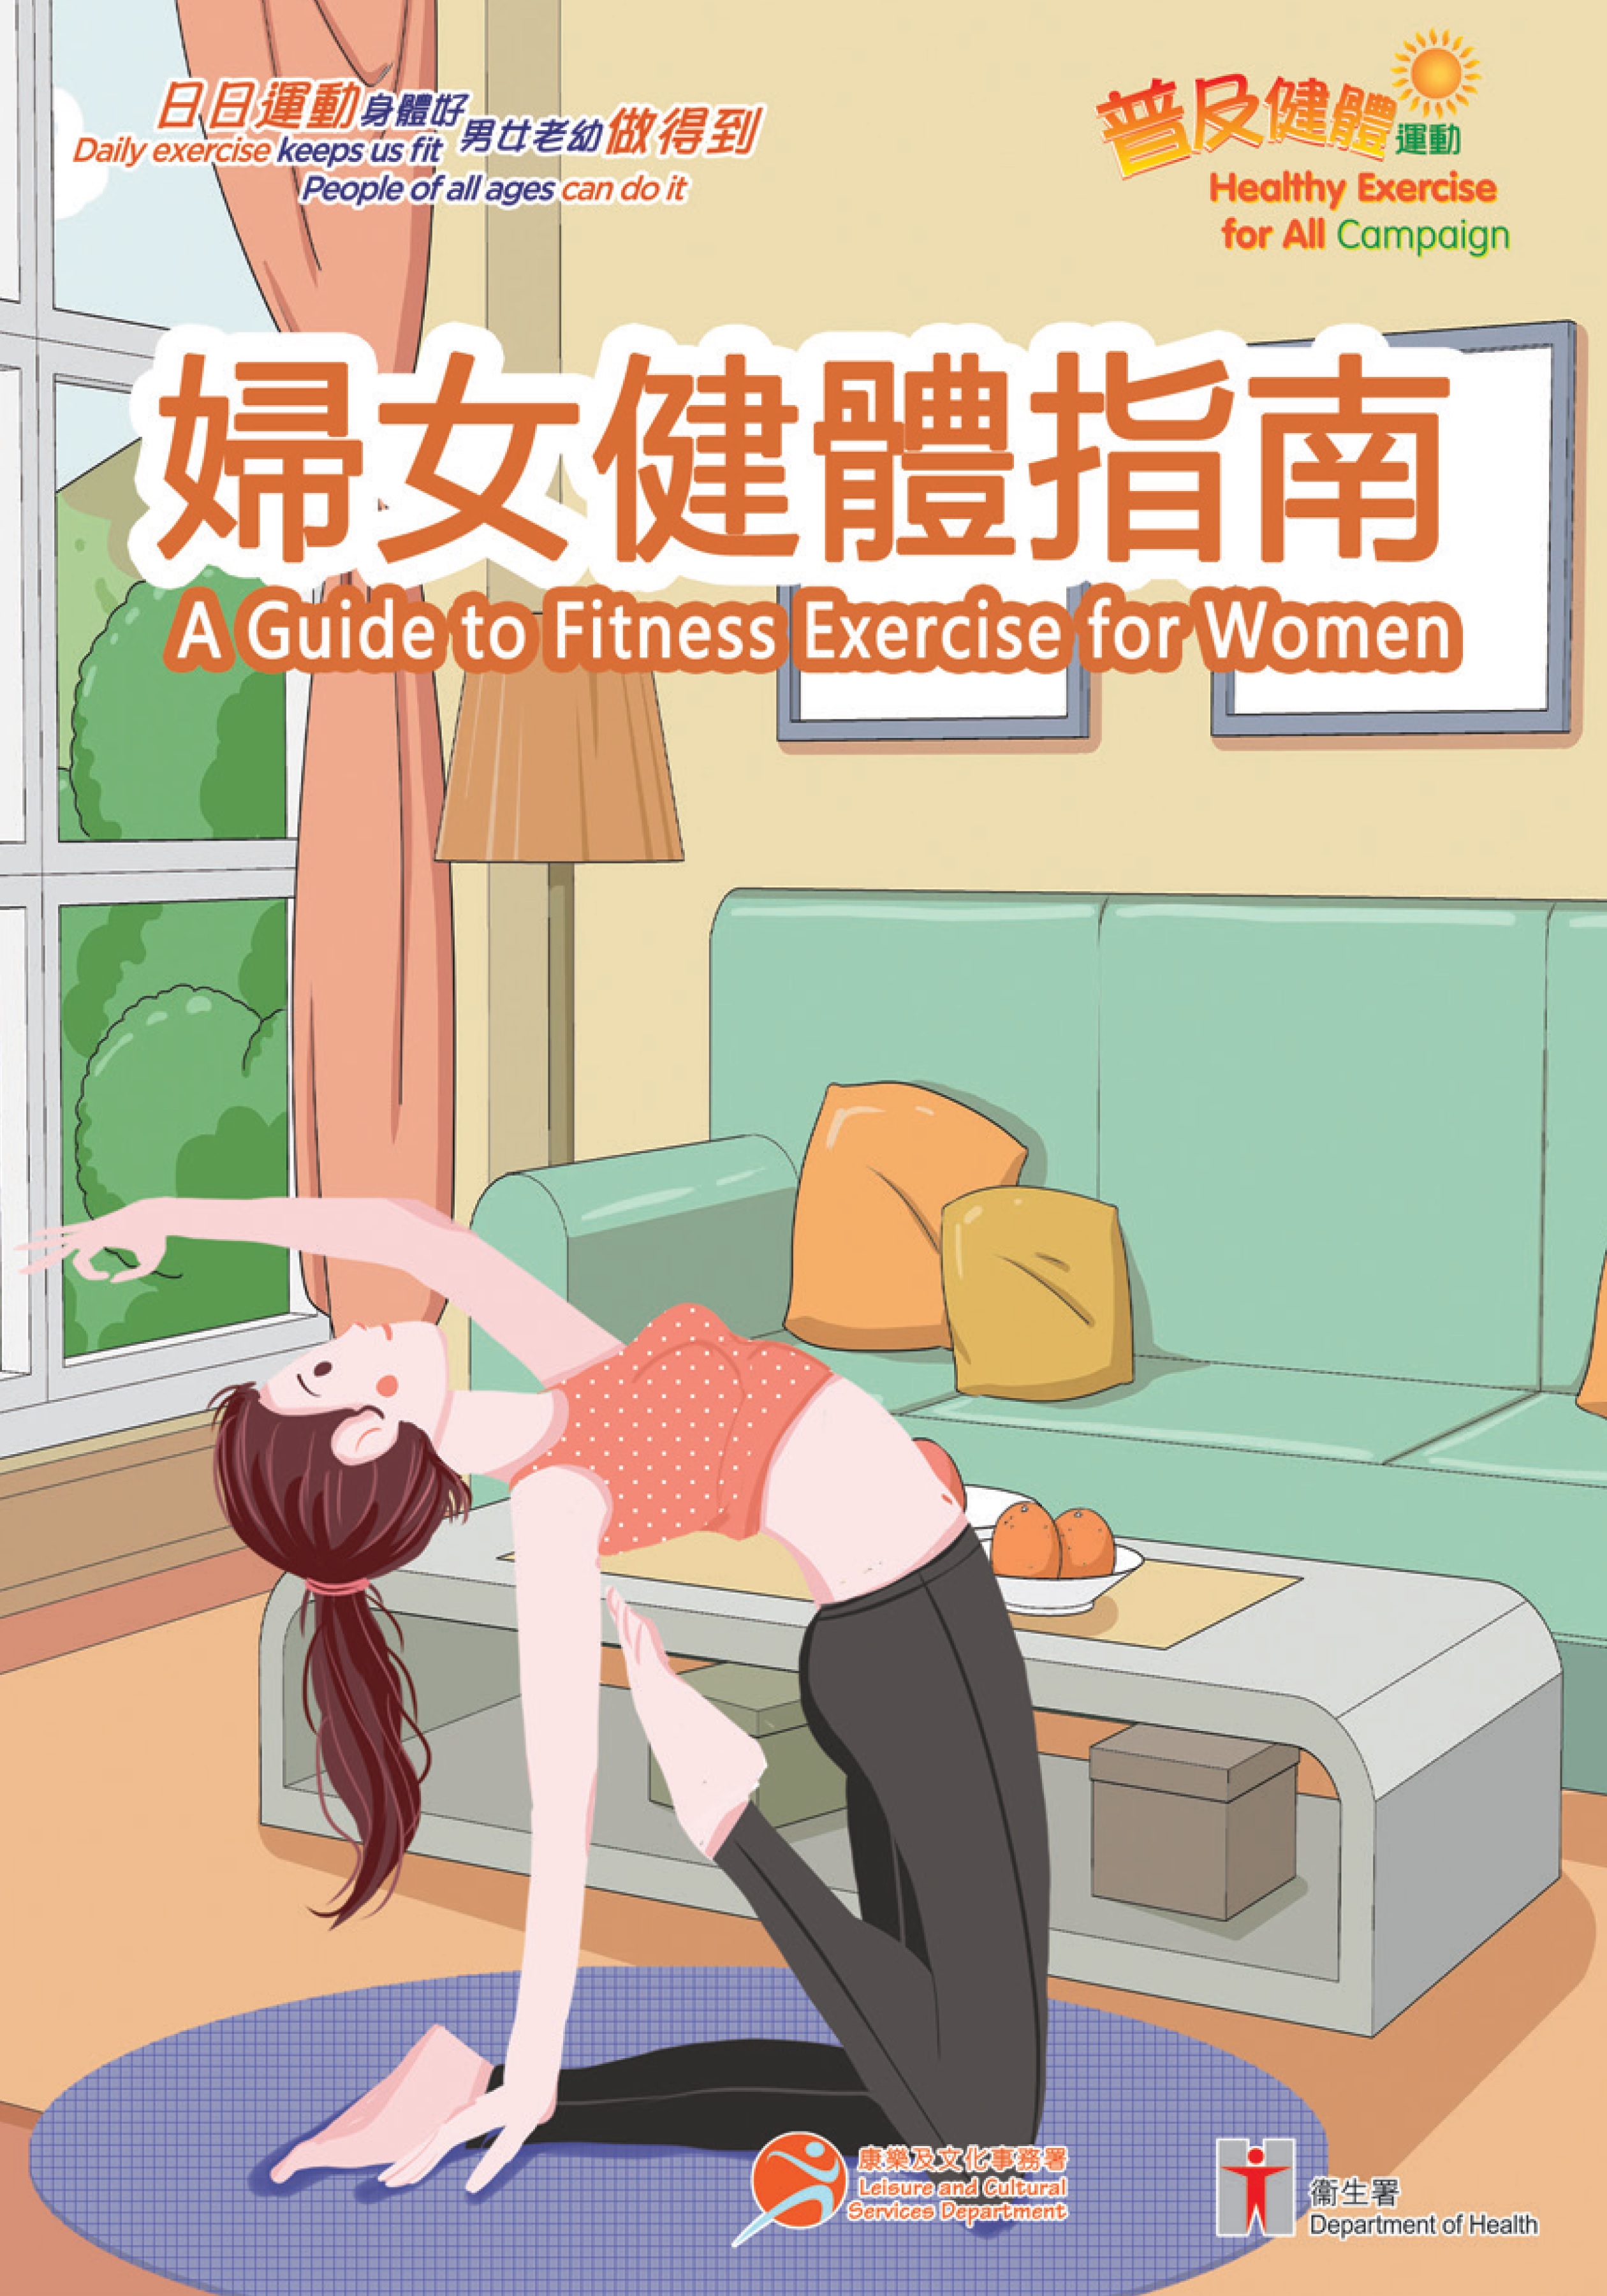 Fitness Exercises for Women